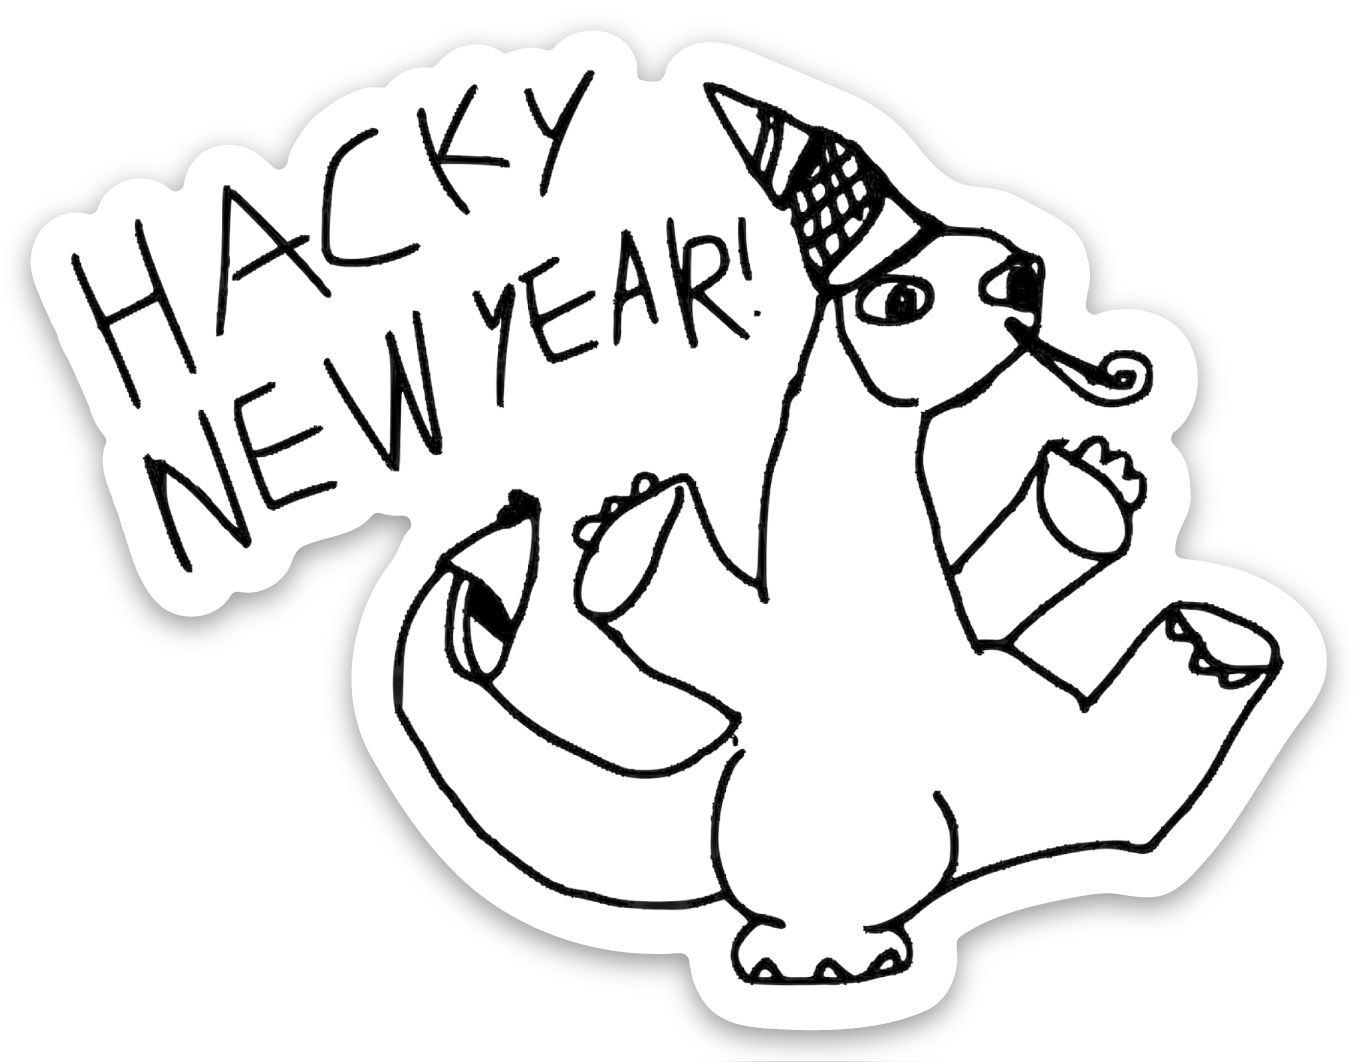 hacky_new_year